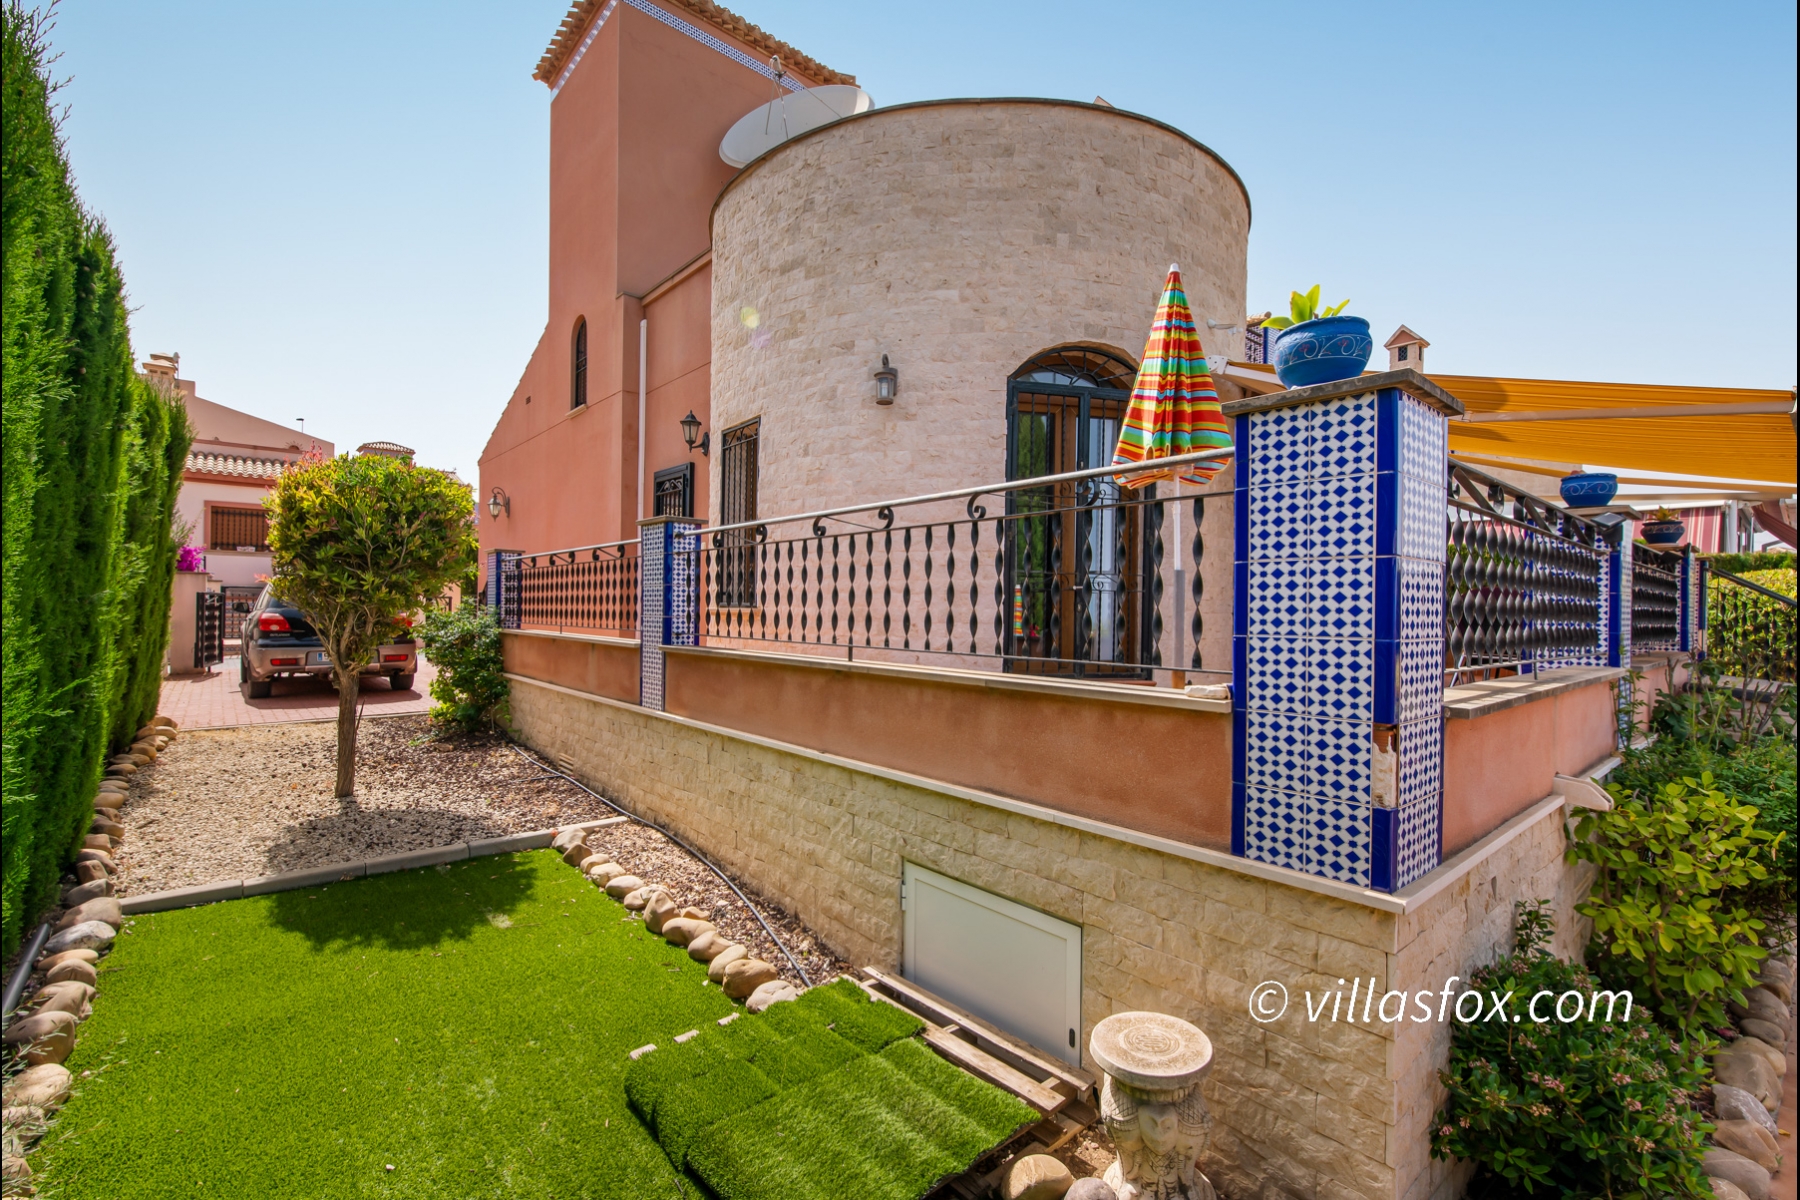 3-bedroom detached villa with spectacular views, La Cañada Fase II